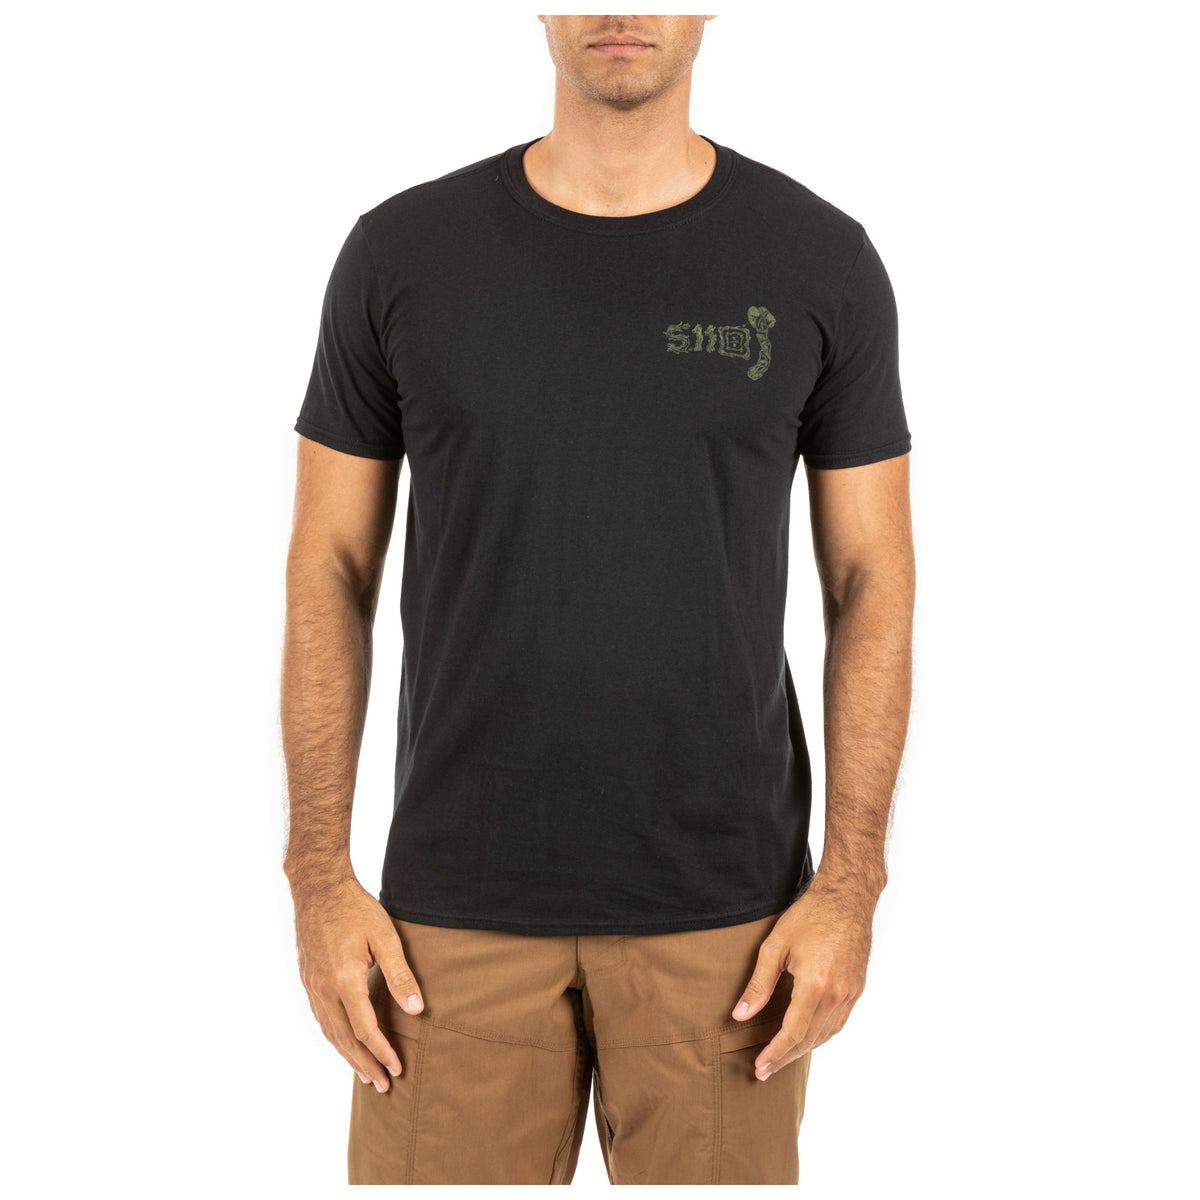 chip axe t-shirt di 5.11 vista frontale con logo sul petto